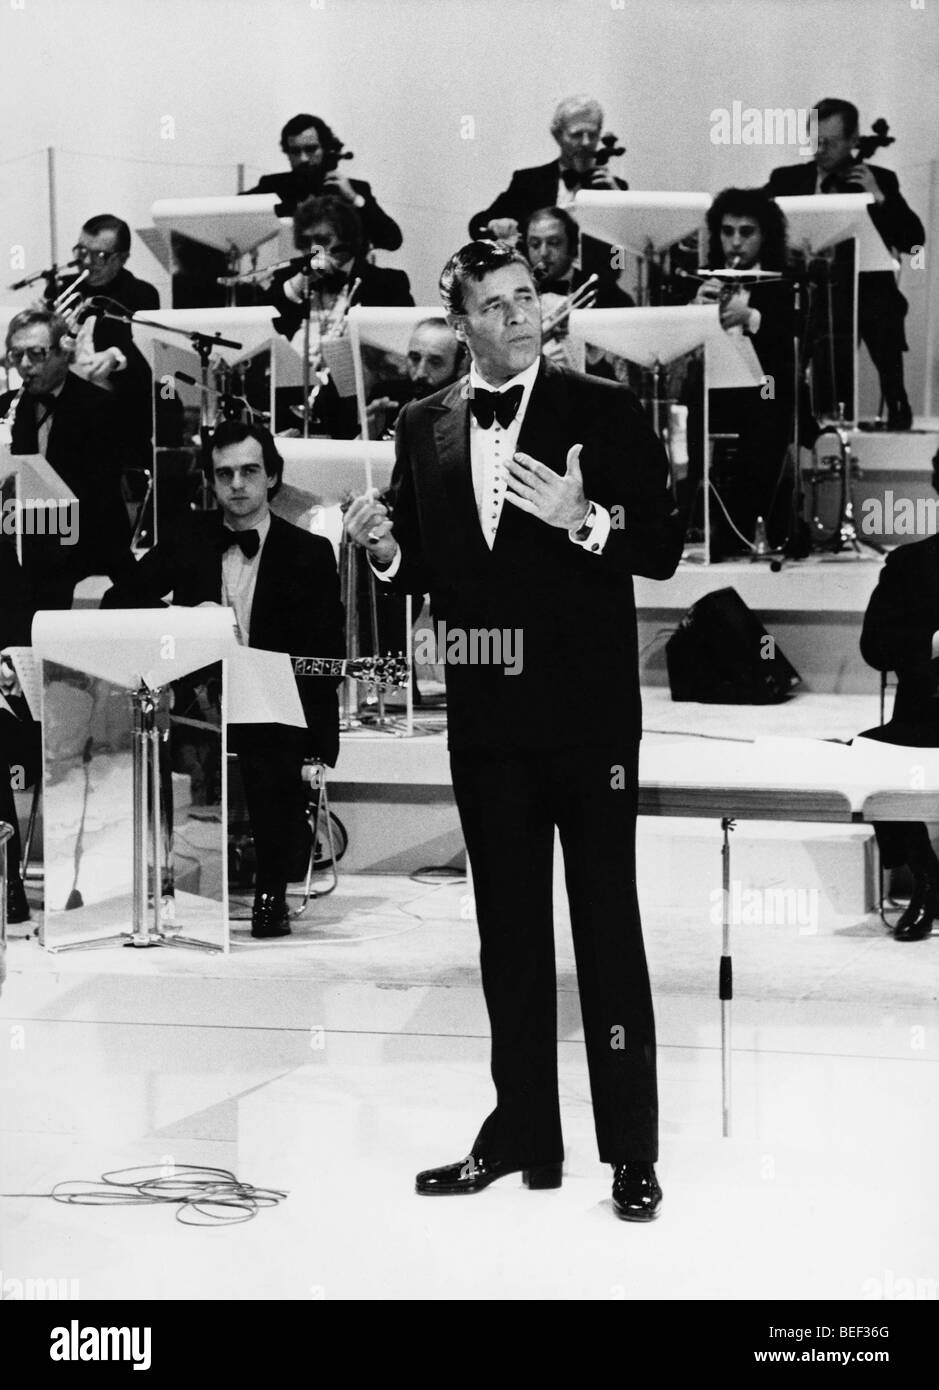 5557002 (900326) Jerry Lewis, noi - amerikanischer Schauspieler, in der Sendung "Le grand studio', im Hintergrund das Orchester Foto Stock